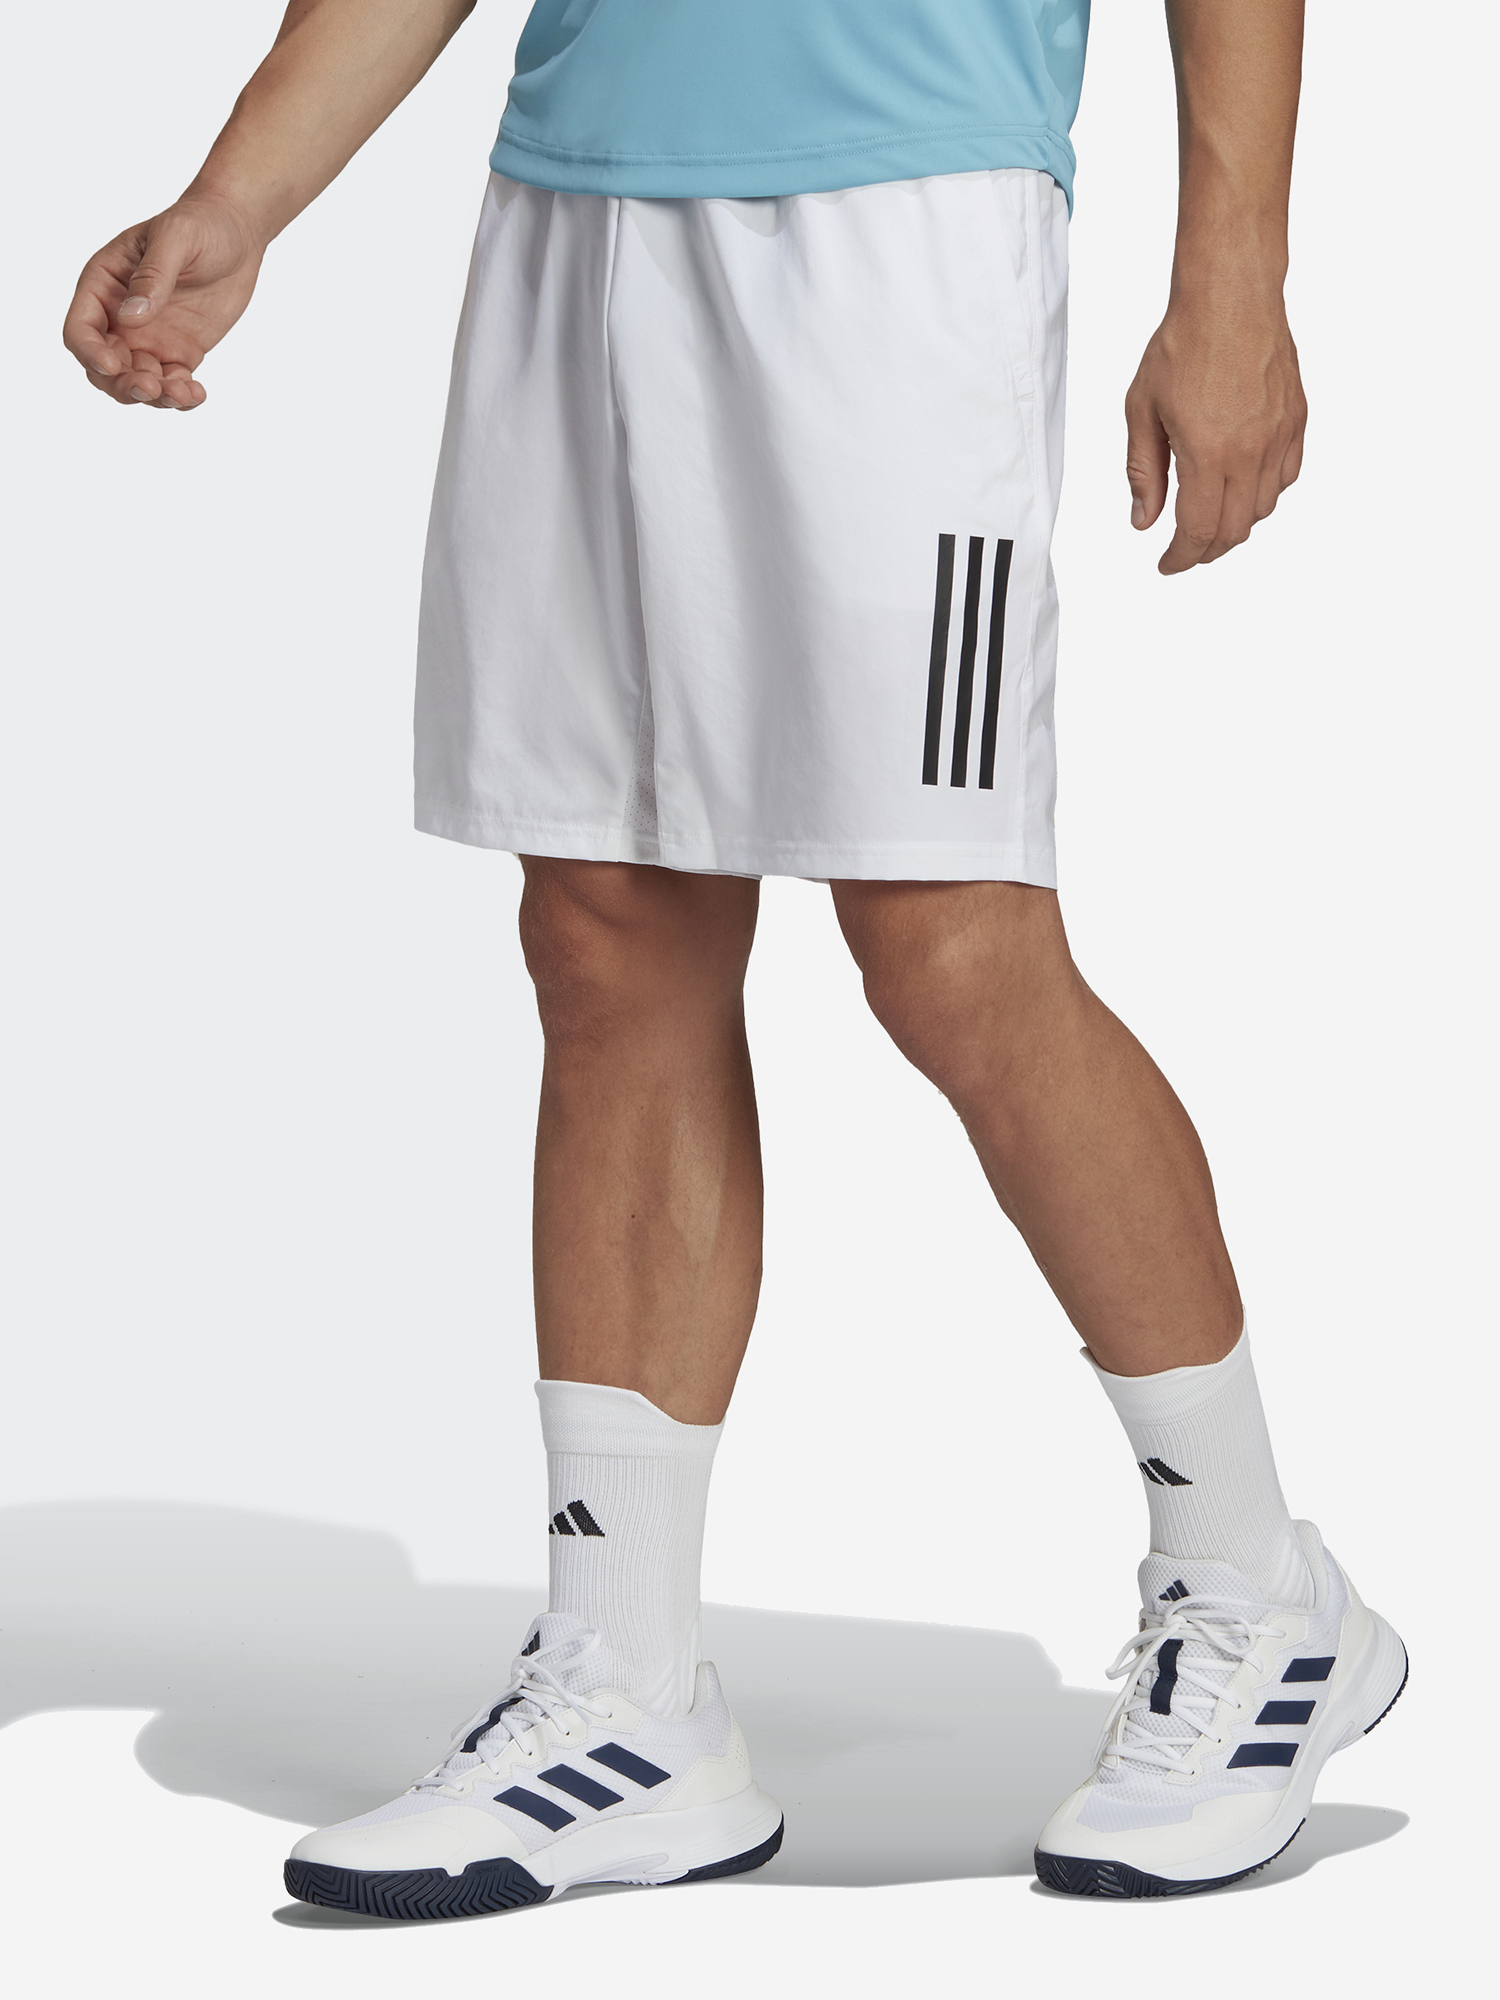 Шорты мужские adidas club, Белый кимоно для дзюдо с поясом подростковое adidas club белое с черными полосками